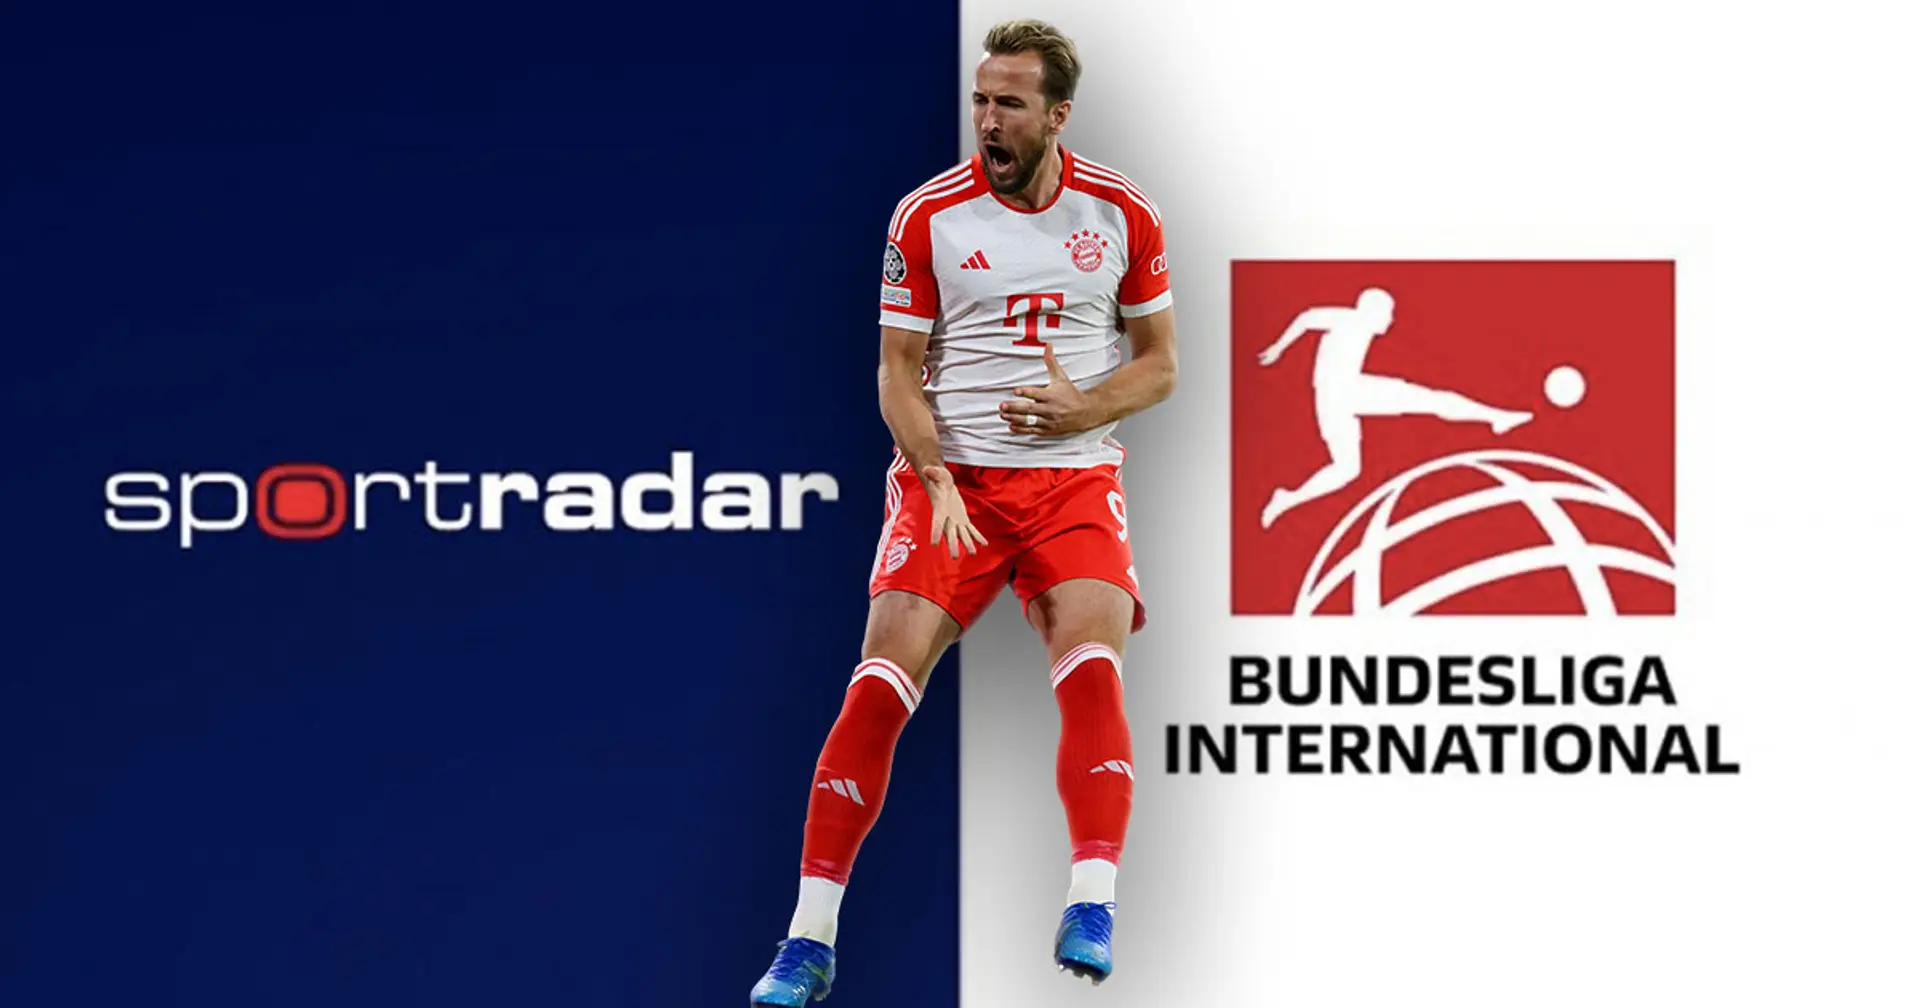 La Bundesliga annonce la prolongation à long terme de son partenariat avec Sportradar